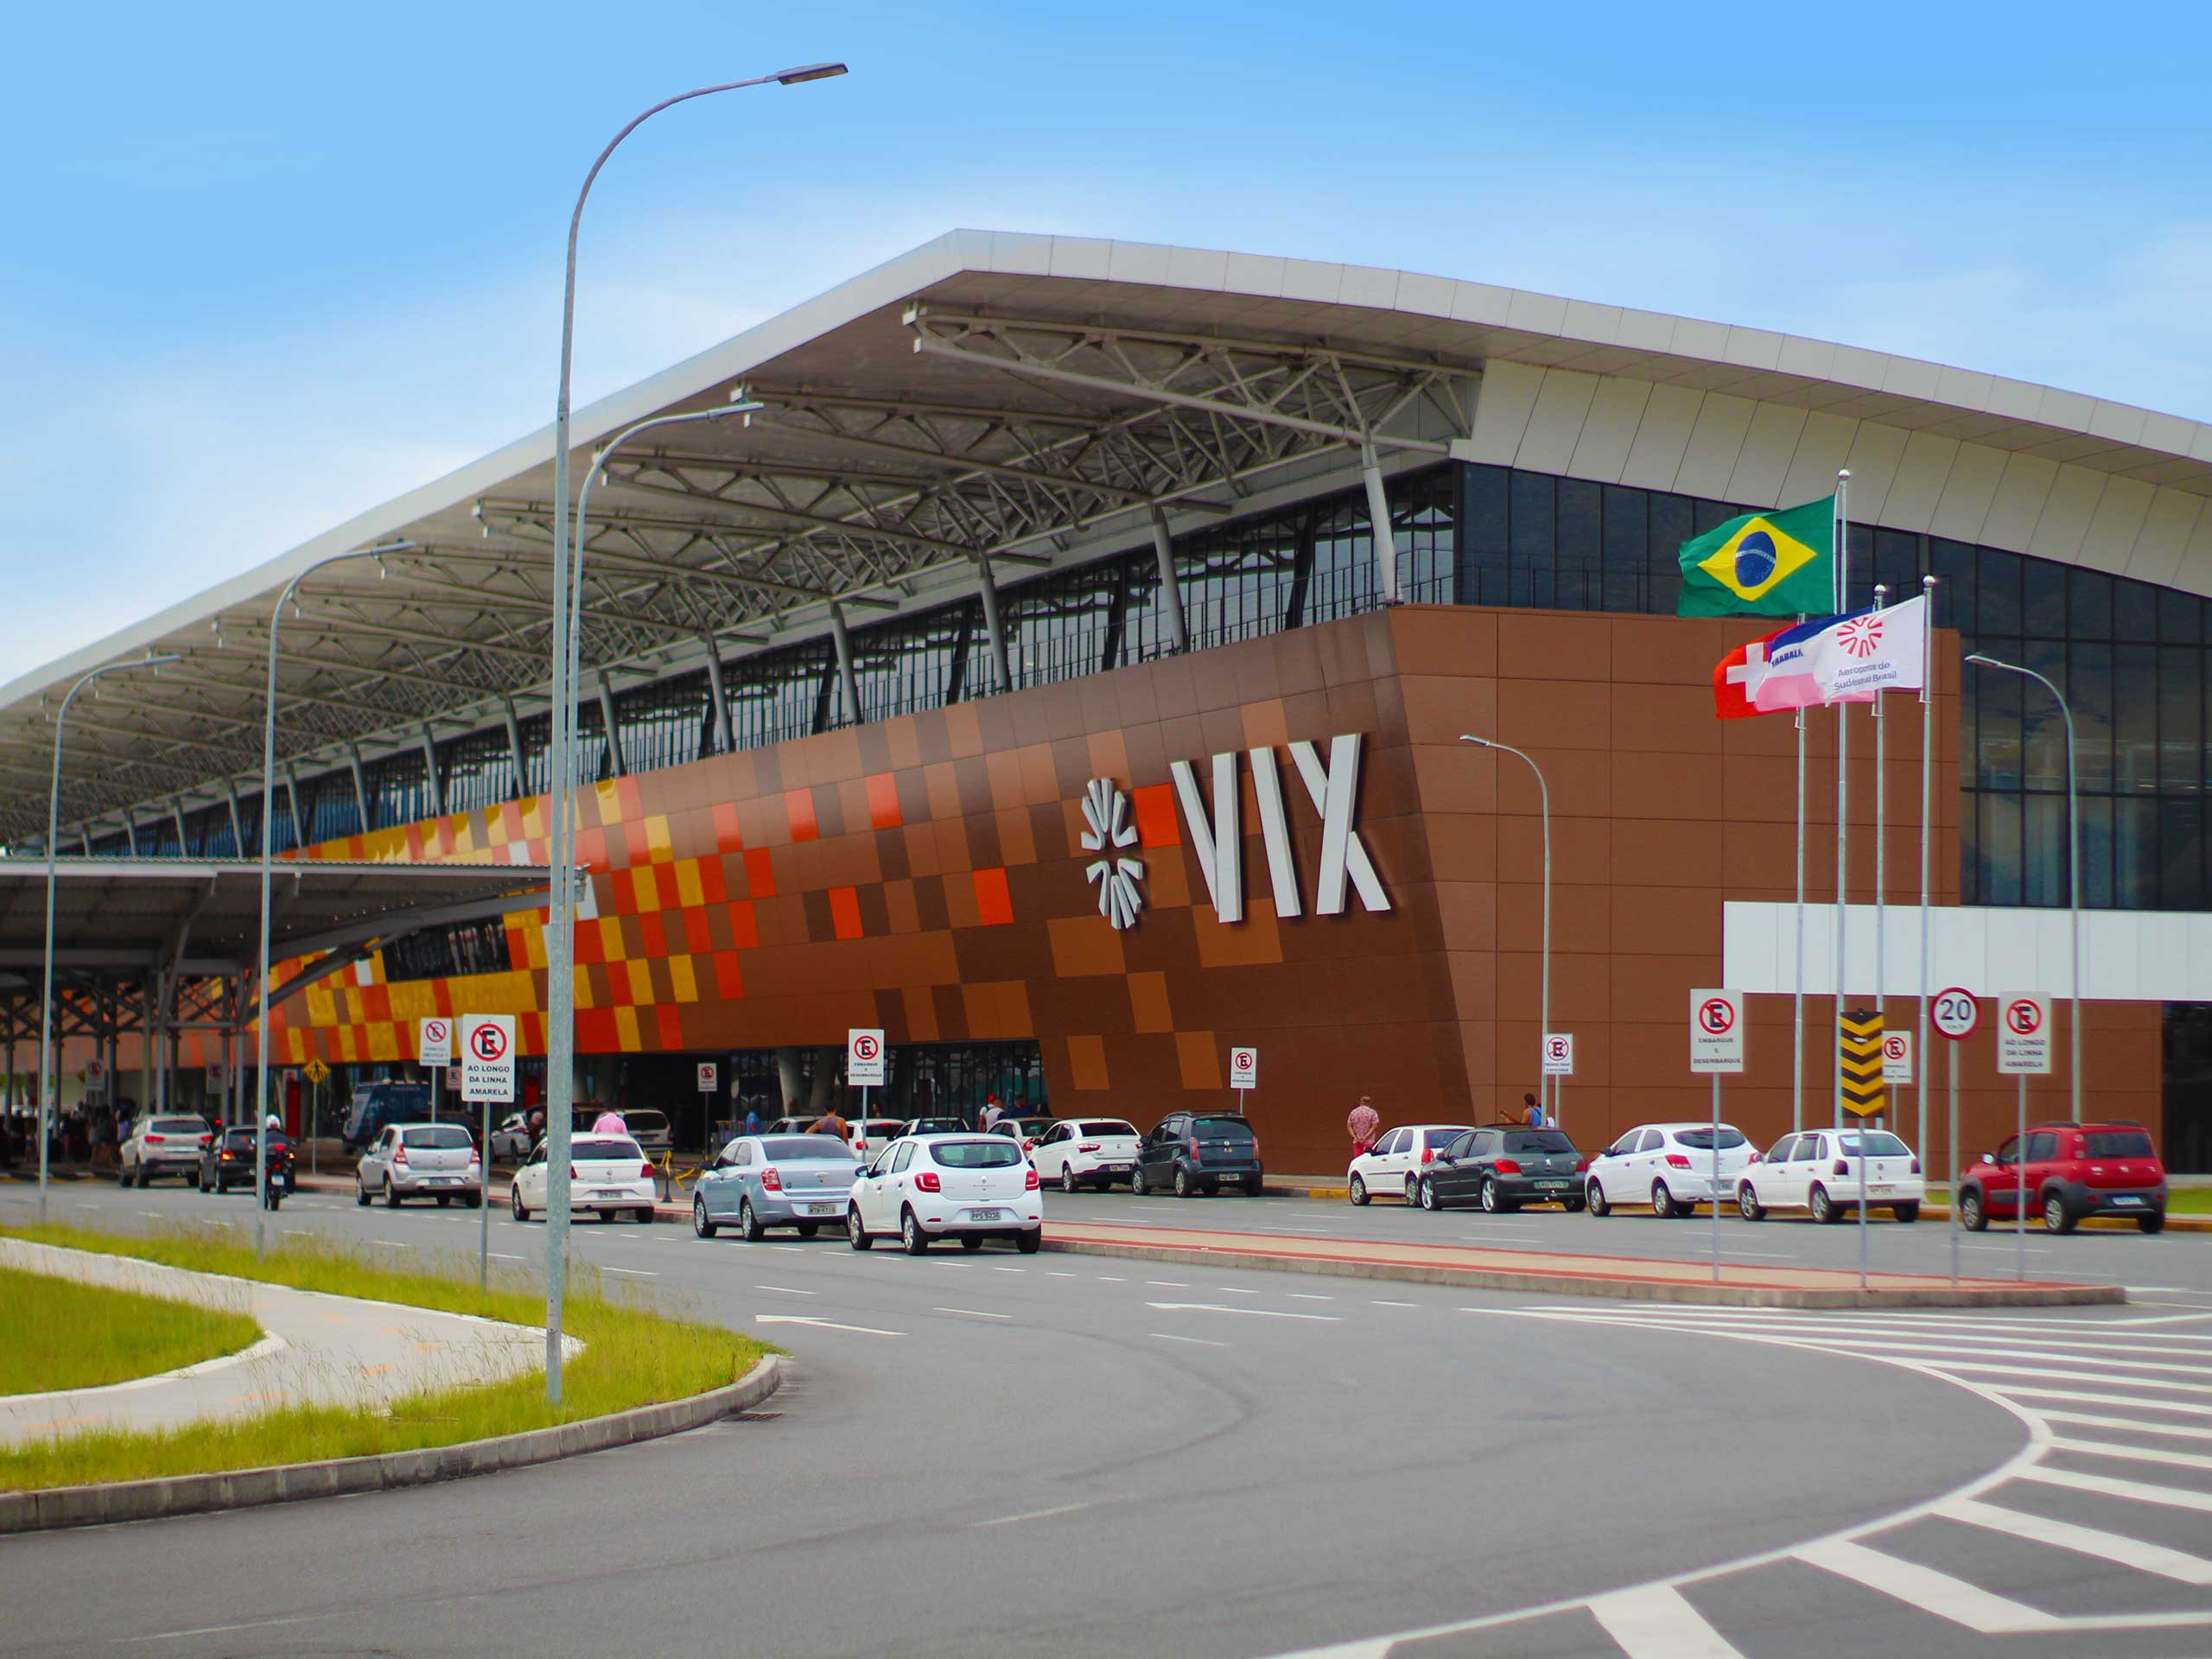 Vitória Airport in Brazil, since 2019